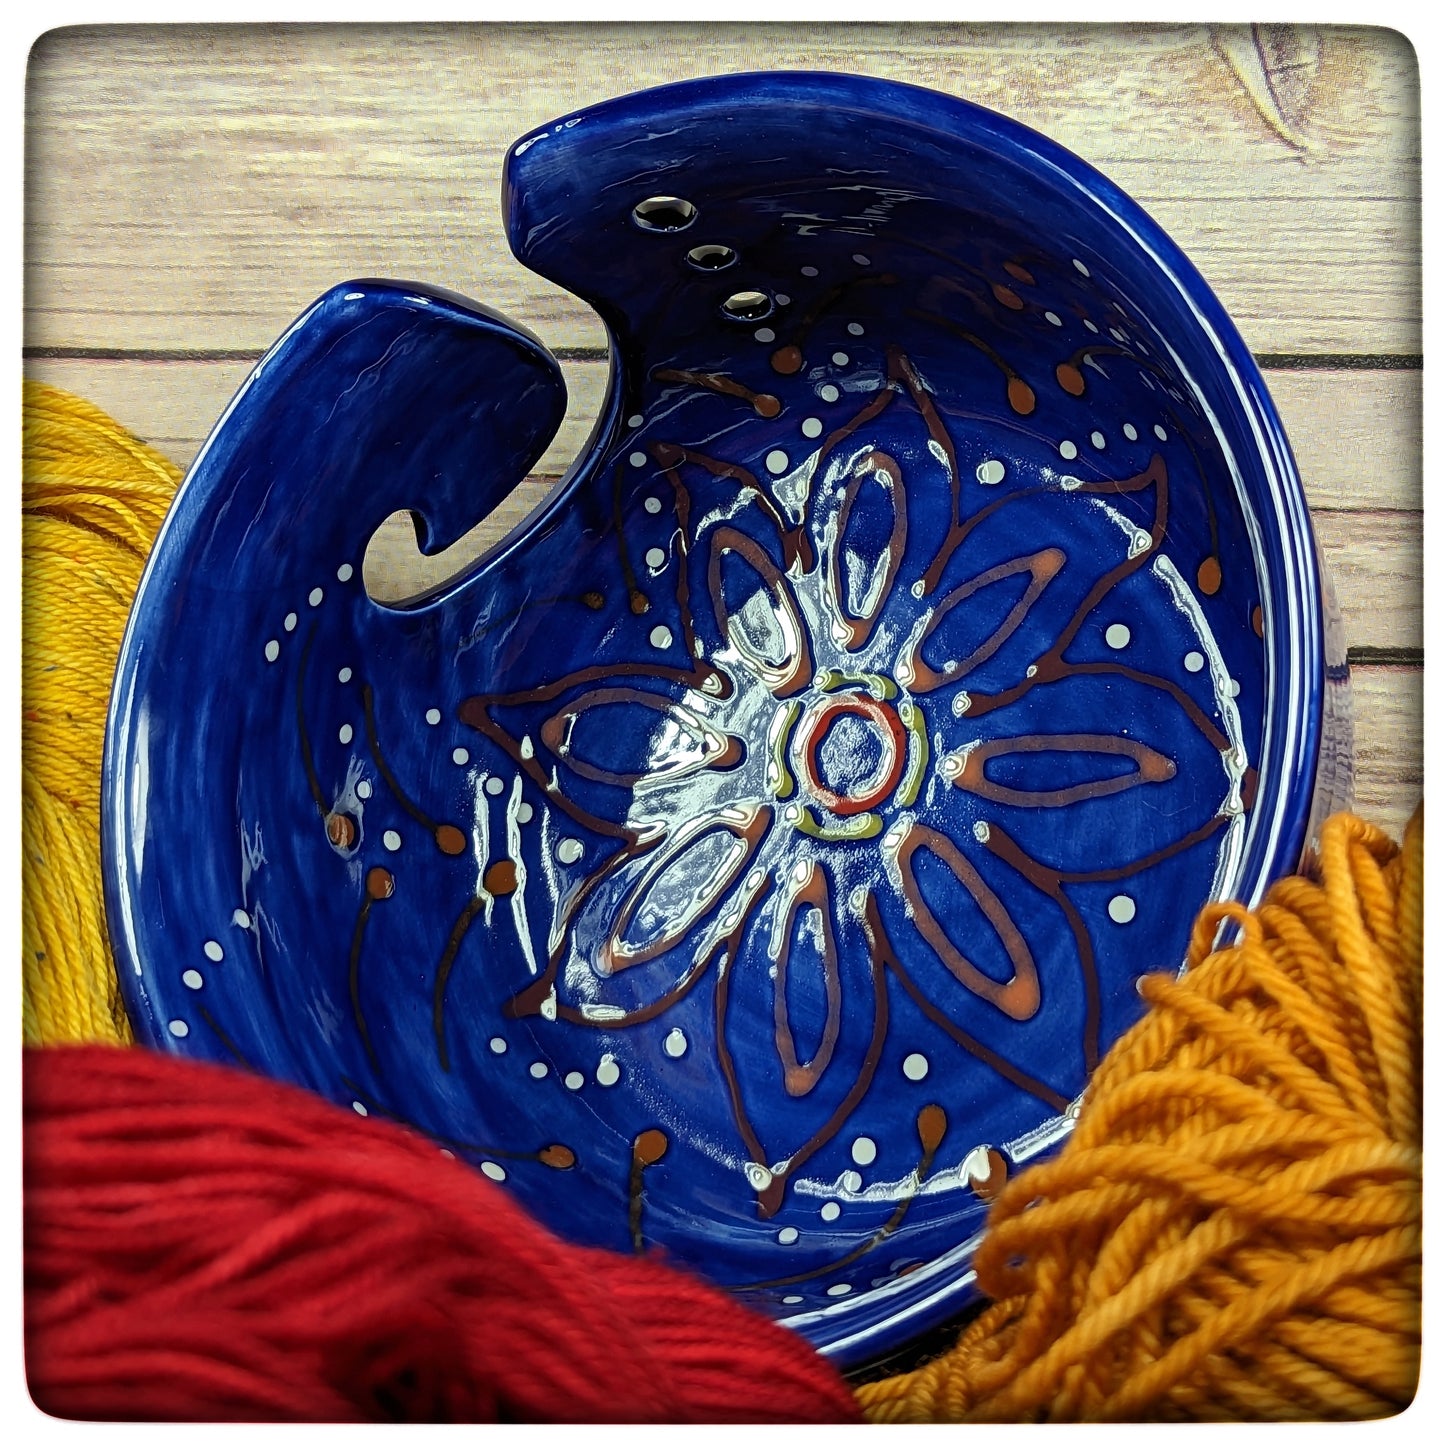 Yarn bowl (wide)